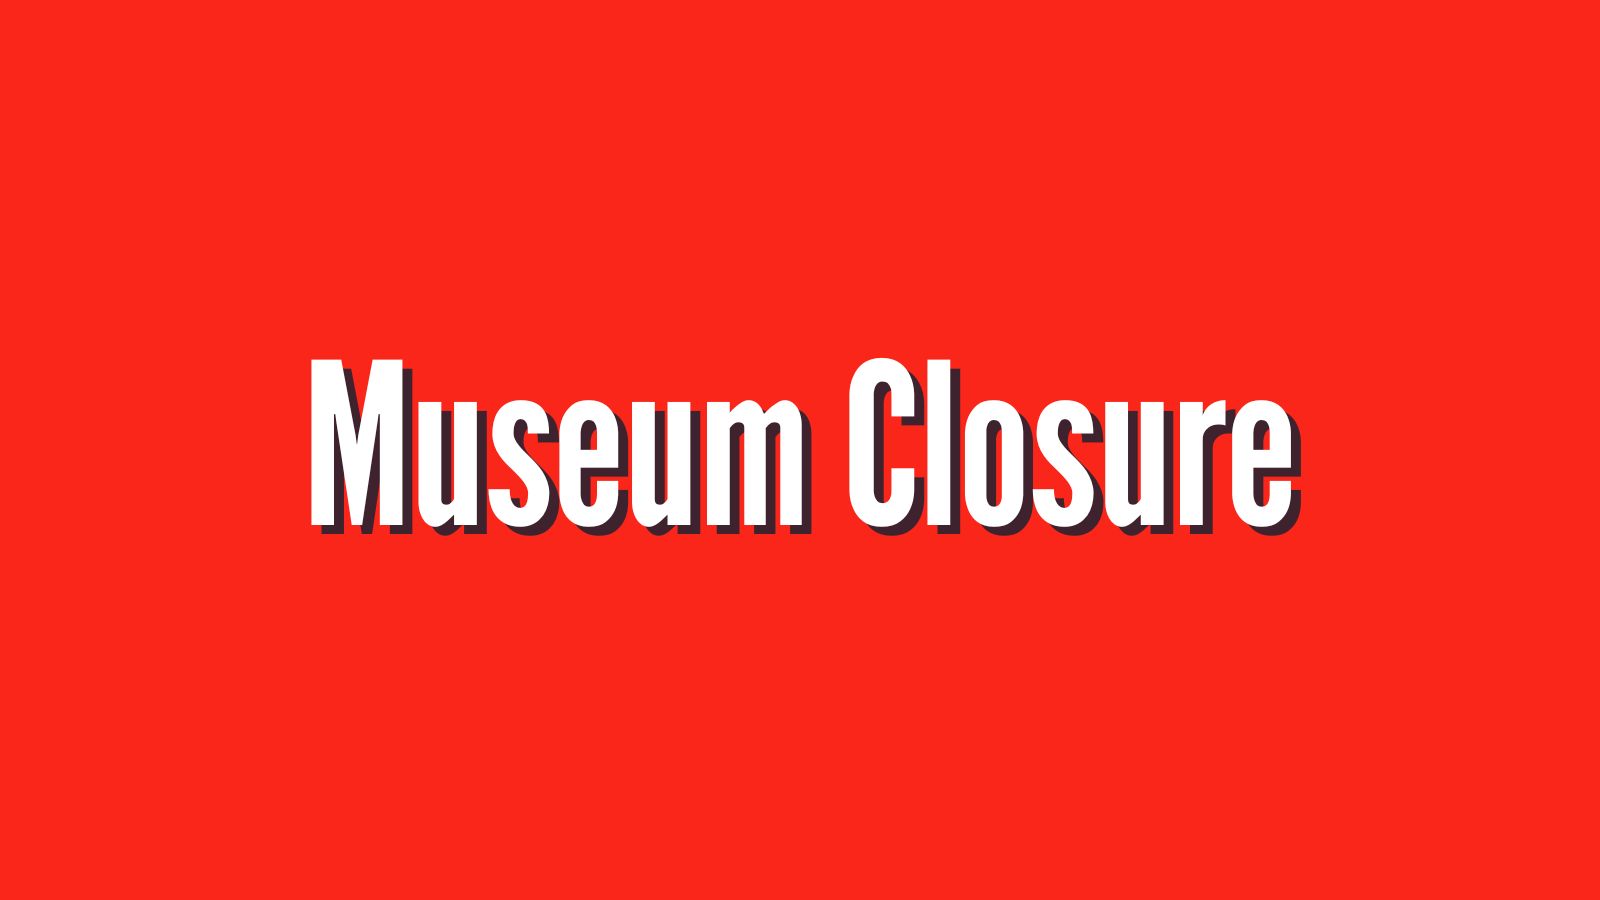 Museum closure